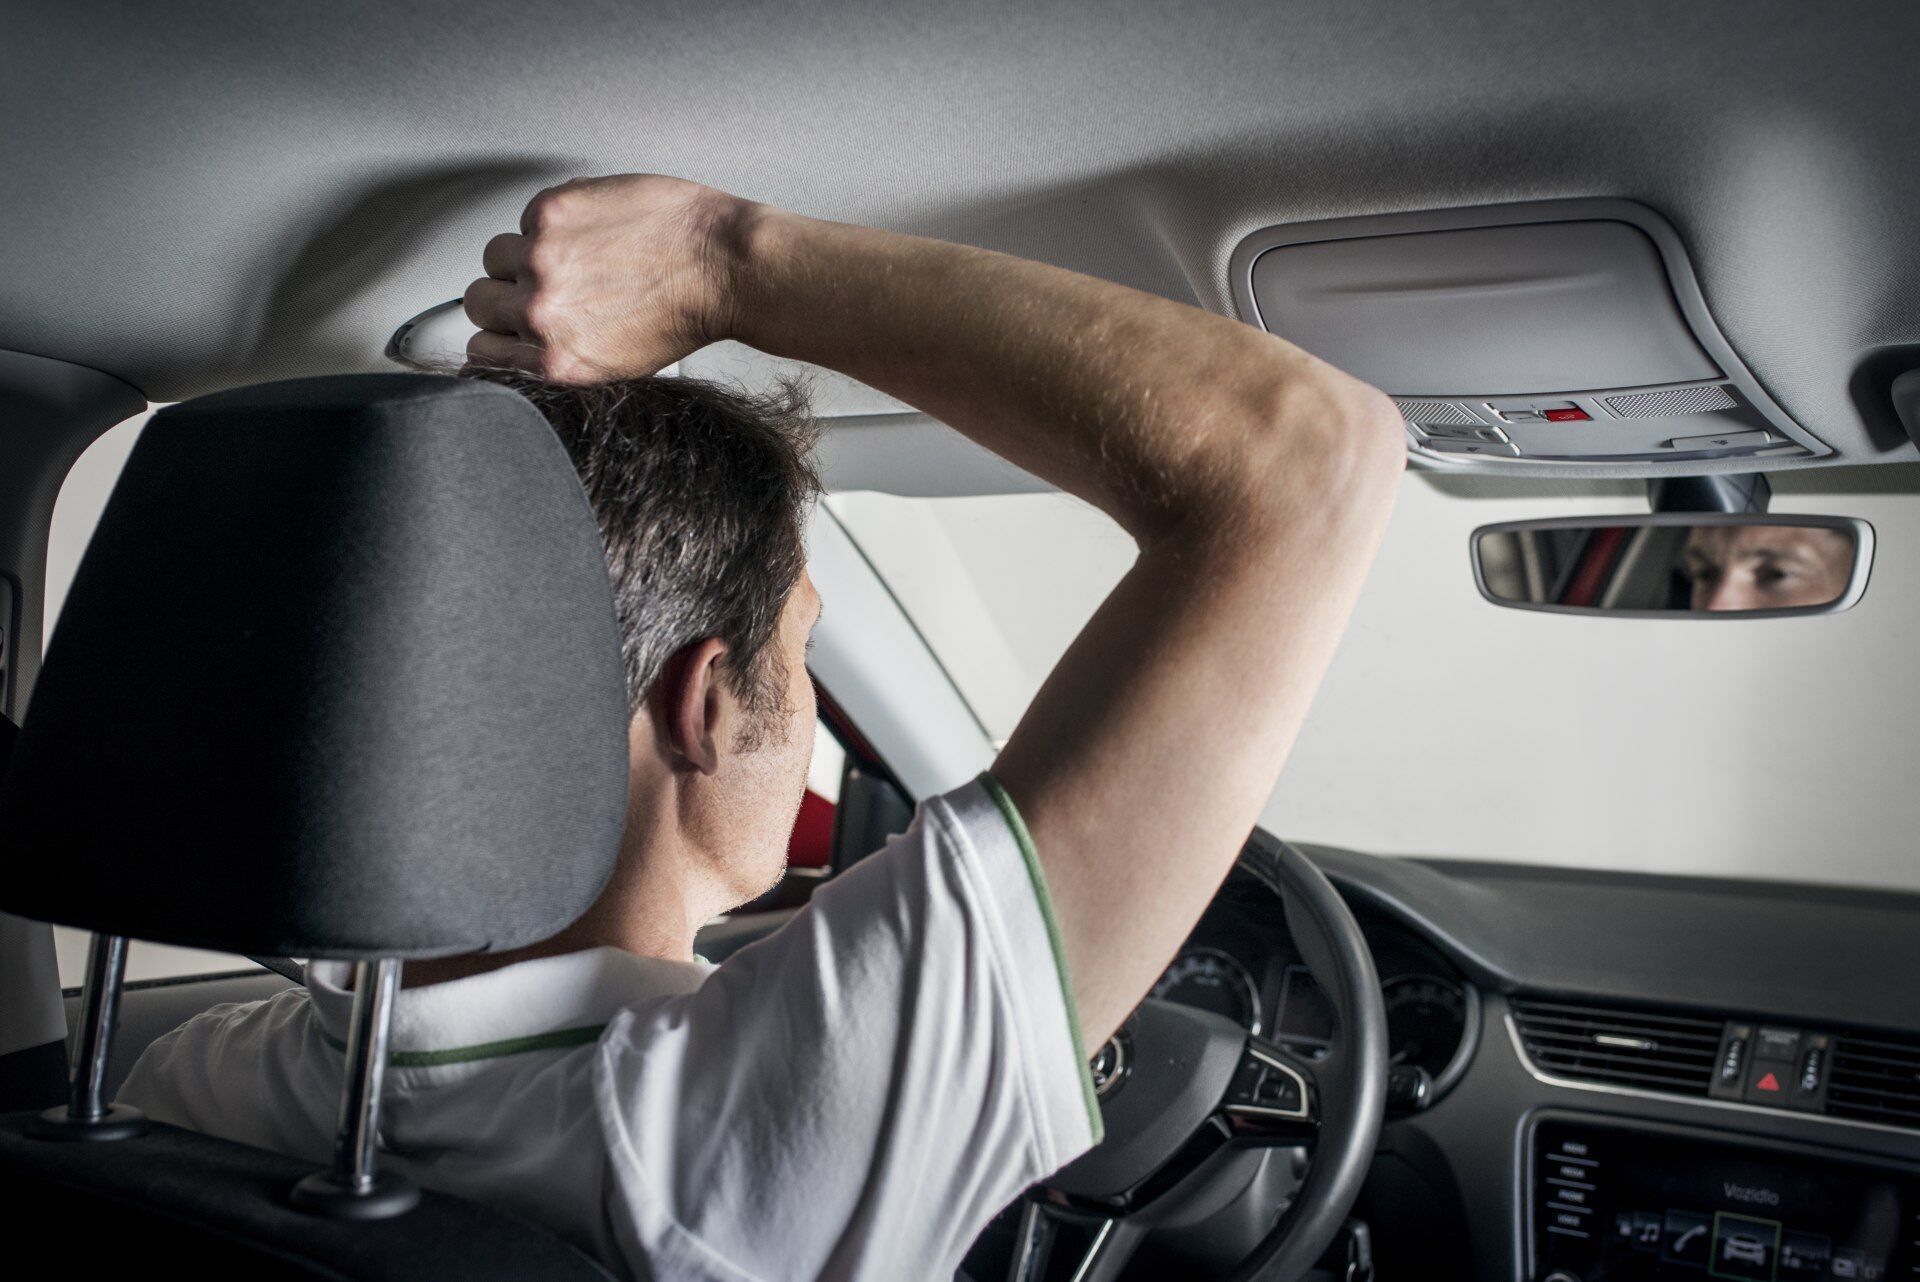 Vежду головой водителя и потолком автомобиля должен поместиться сжатый кулак